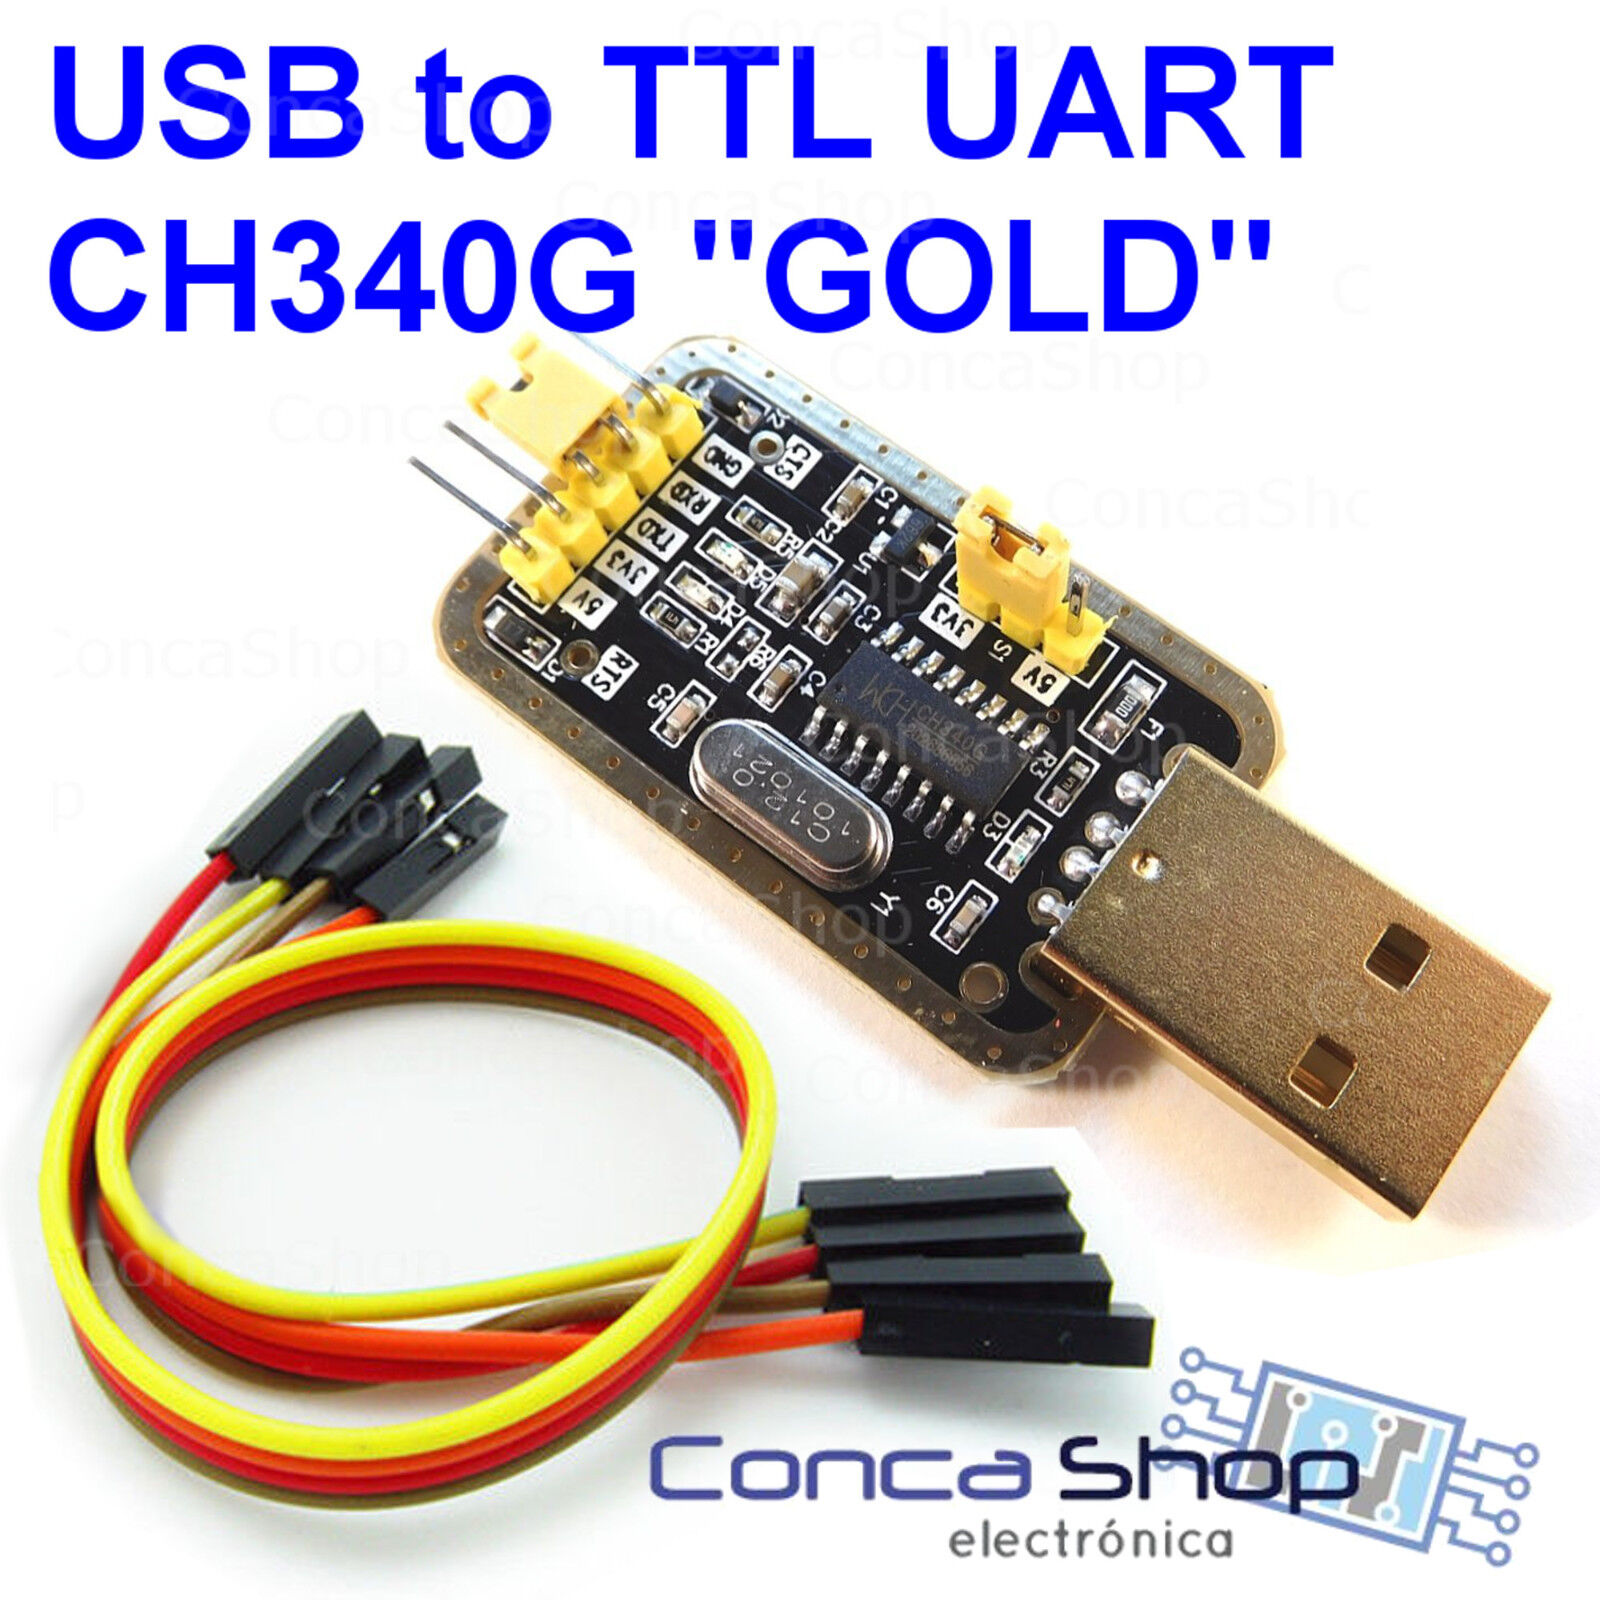 USB A RS232 TTL CH340G Win10 GOLD - CABLE CONVERTIDOR USB UART...